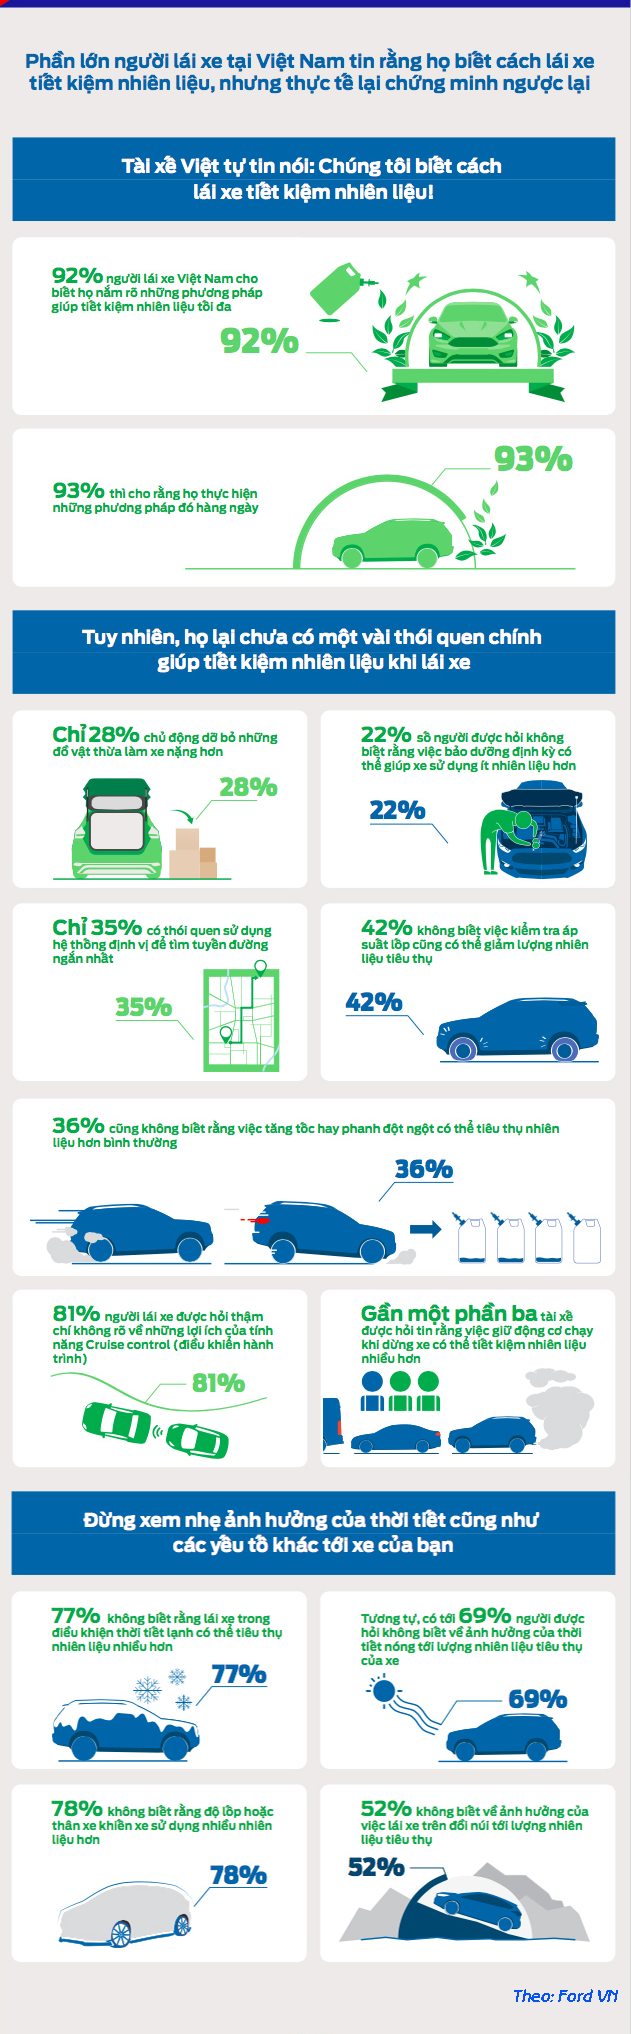 Bạn đã thực sự tiết kiệm nhiên liệu cho ô tô mình?